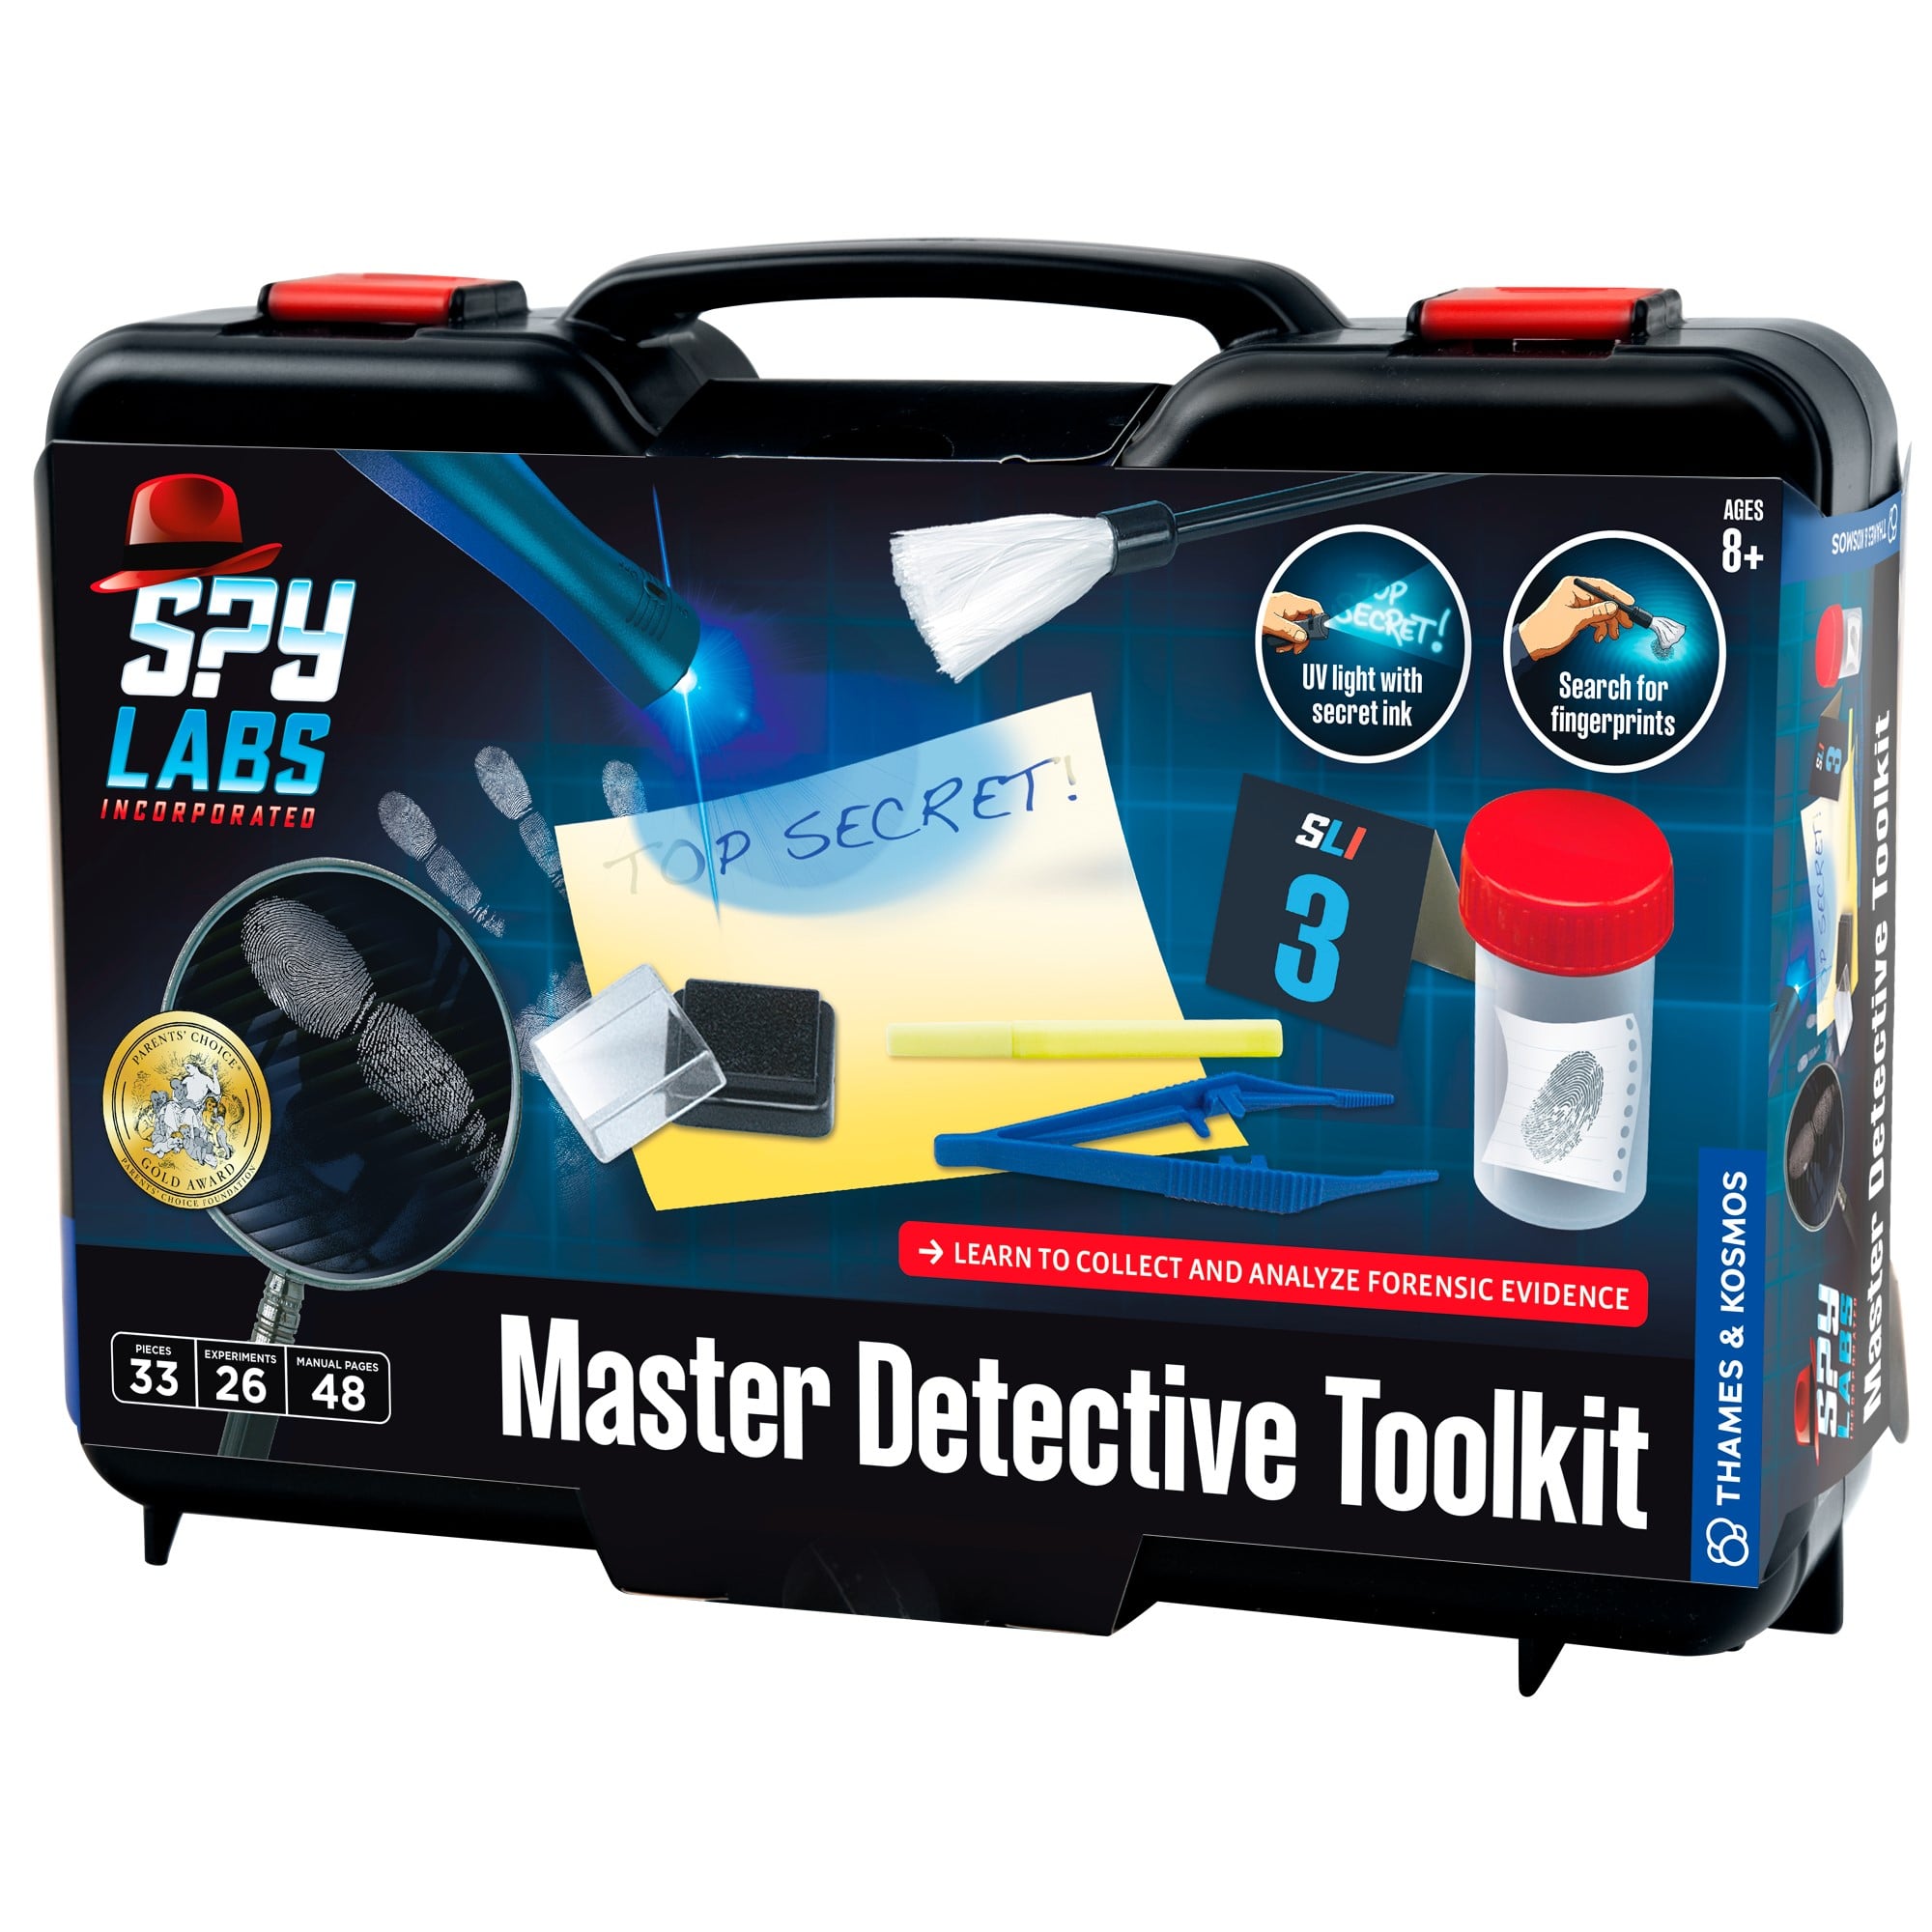 TKKG GeheimstiftUV DetektivausstattungDetective equipment #CO420293 